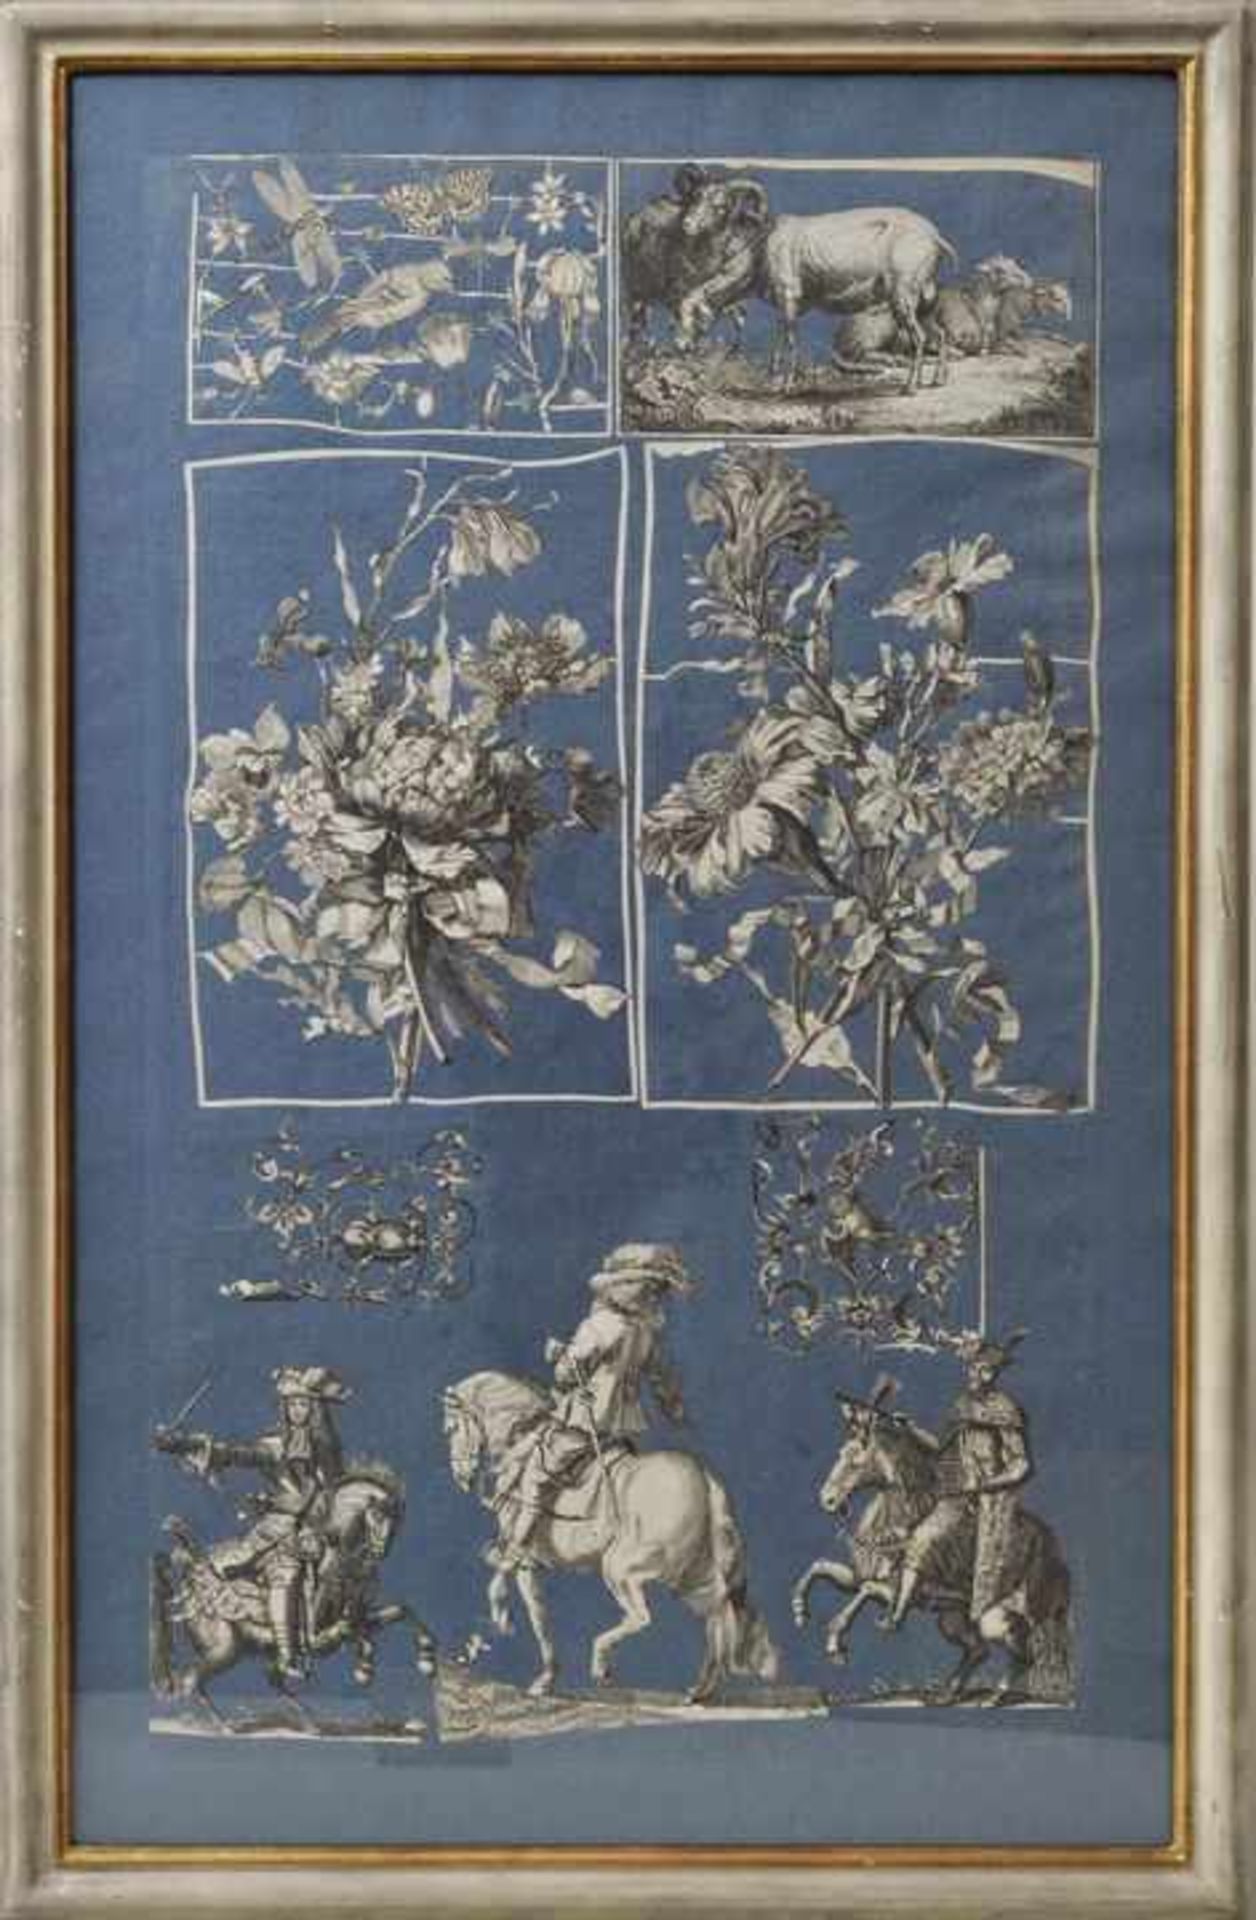 4 Tableux mit Ausschneidearbeit, vermutl. Frankreich, um 1700 Kupferstiche , sorgfältig - Bild 2 aus 4